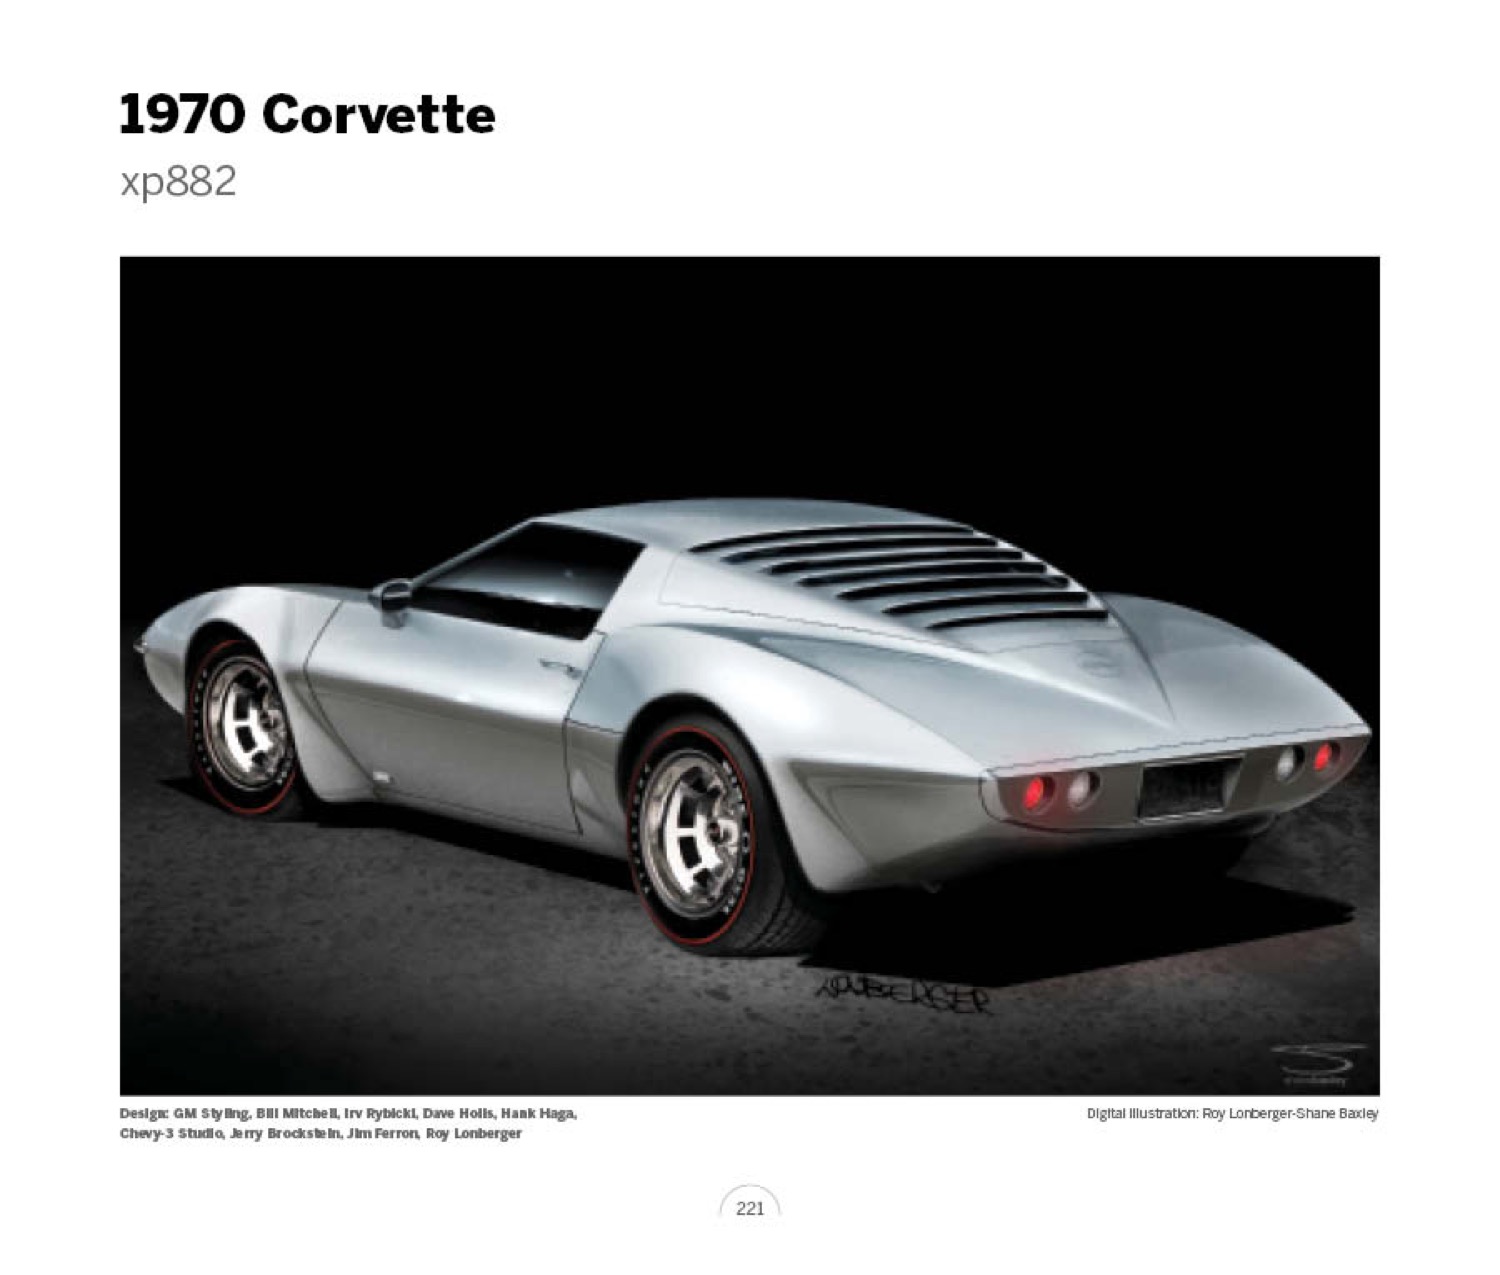 (35) 1970 Corvette xp882 LoRez.jpg